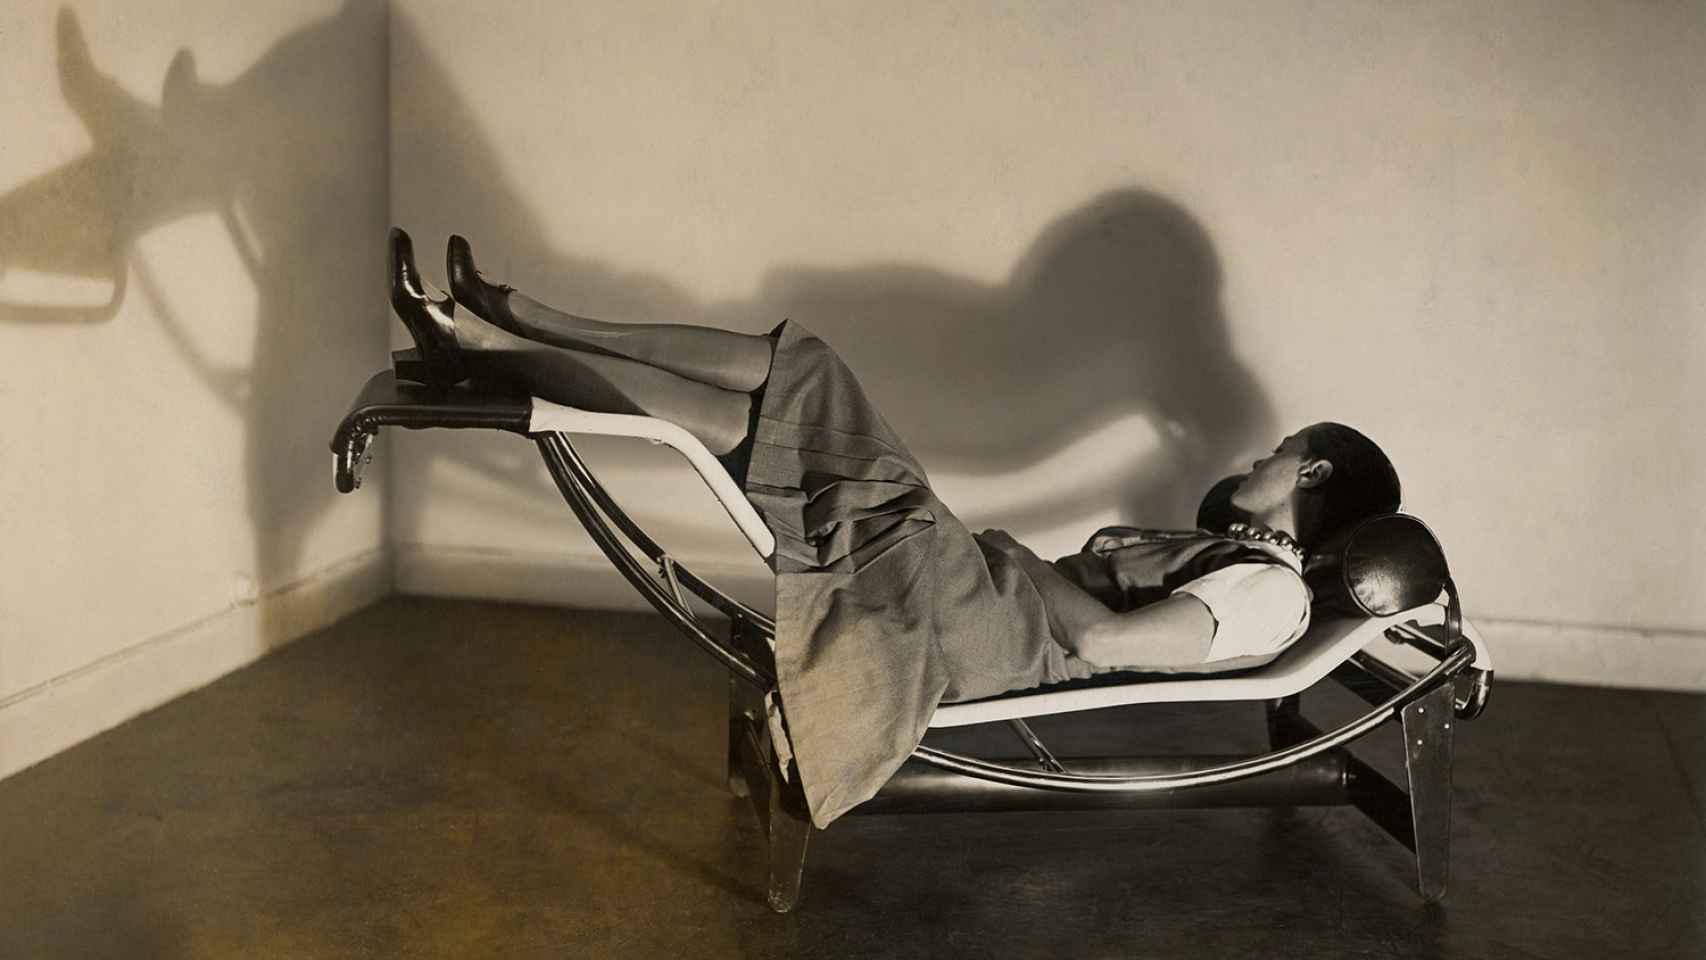 Chaise-longe basculante de Charlotte-Perriand, 1929